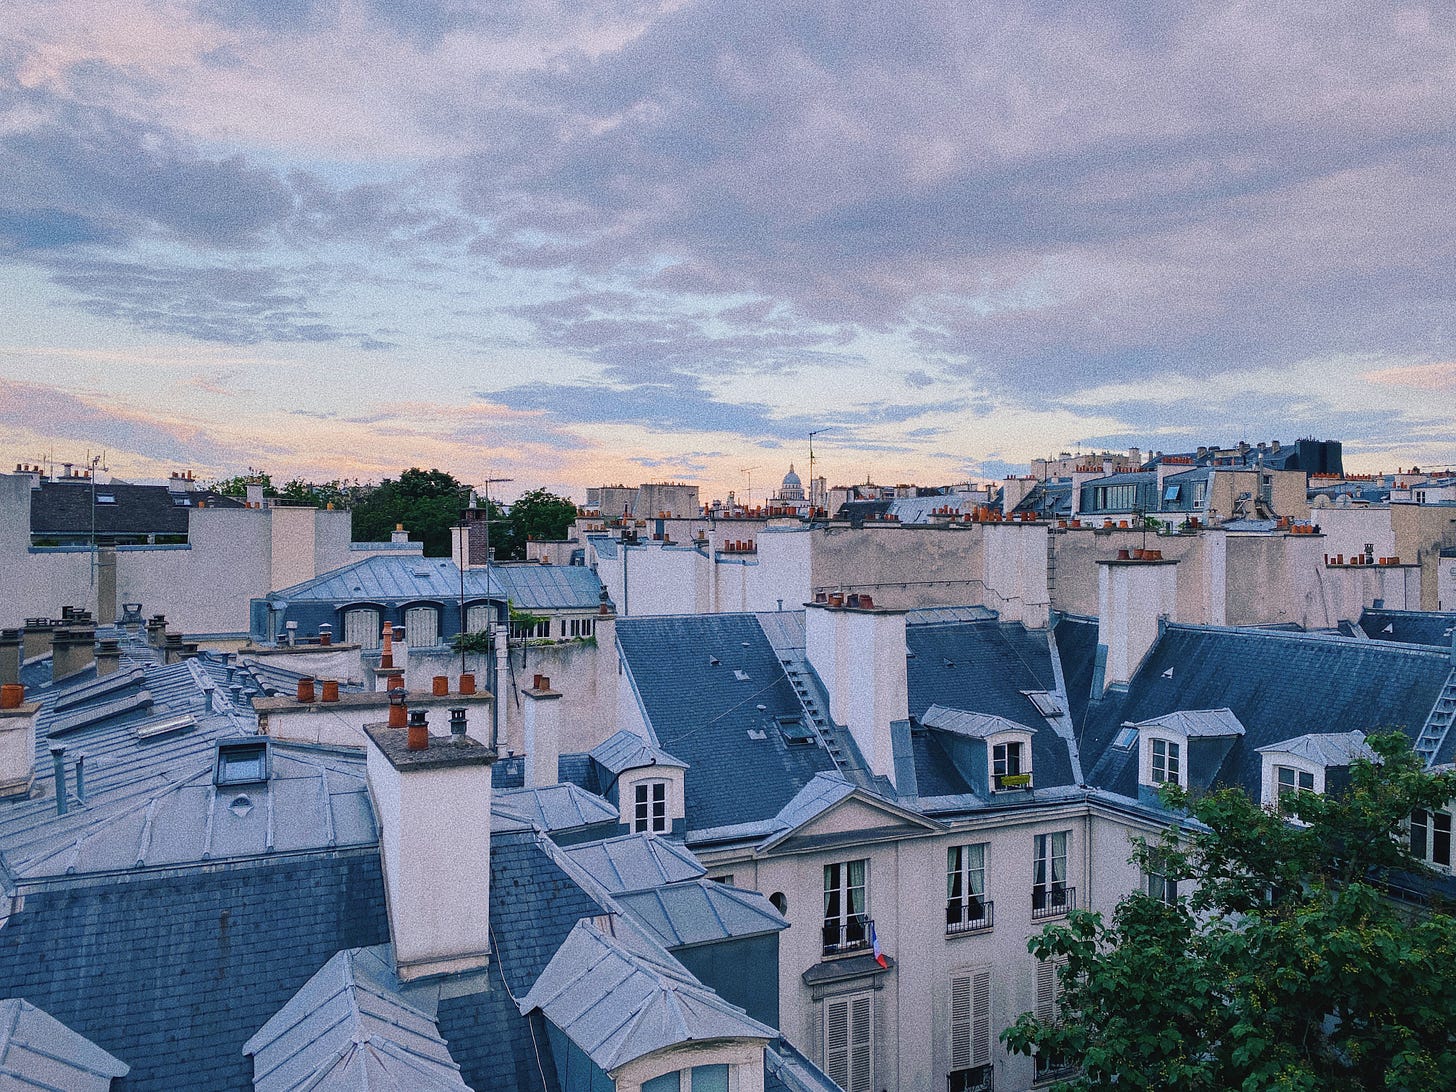 Vue sur les toits de Paris et le Panthéon au loin, depuis ma fenêtre dans mon appartement parisien.